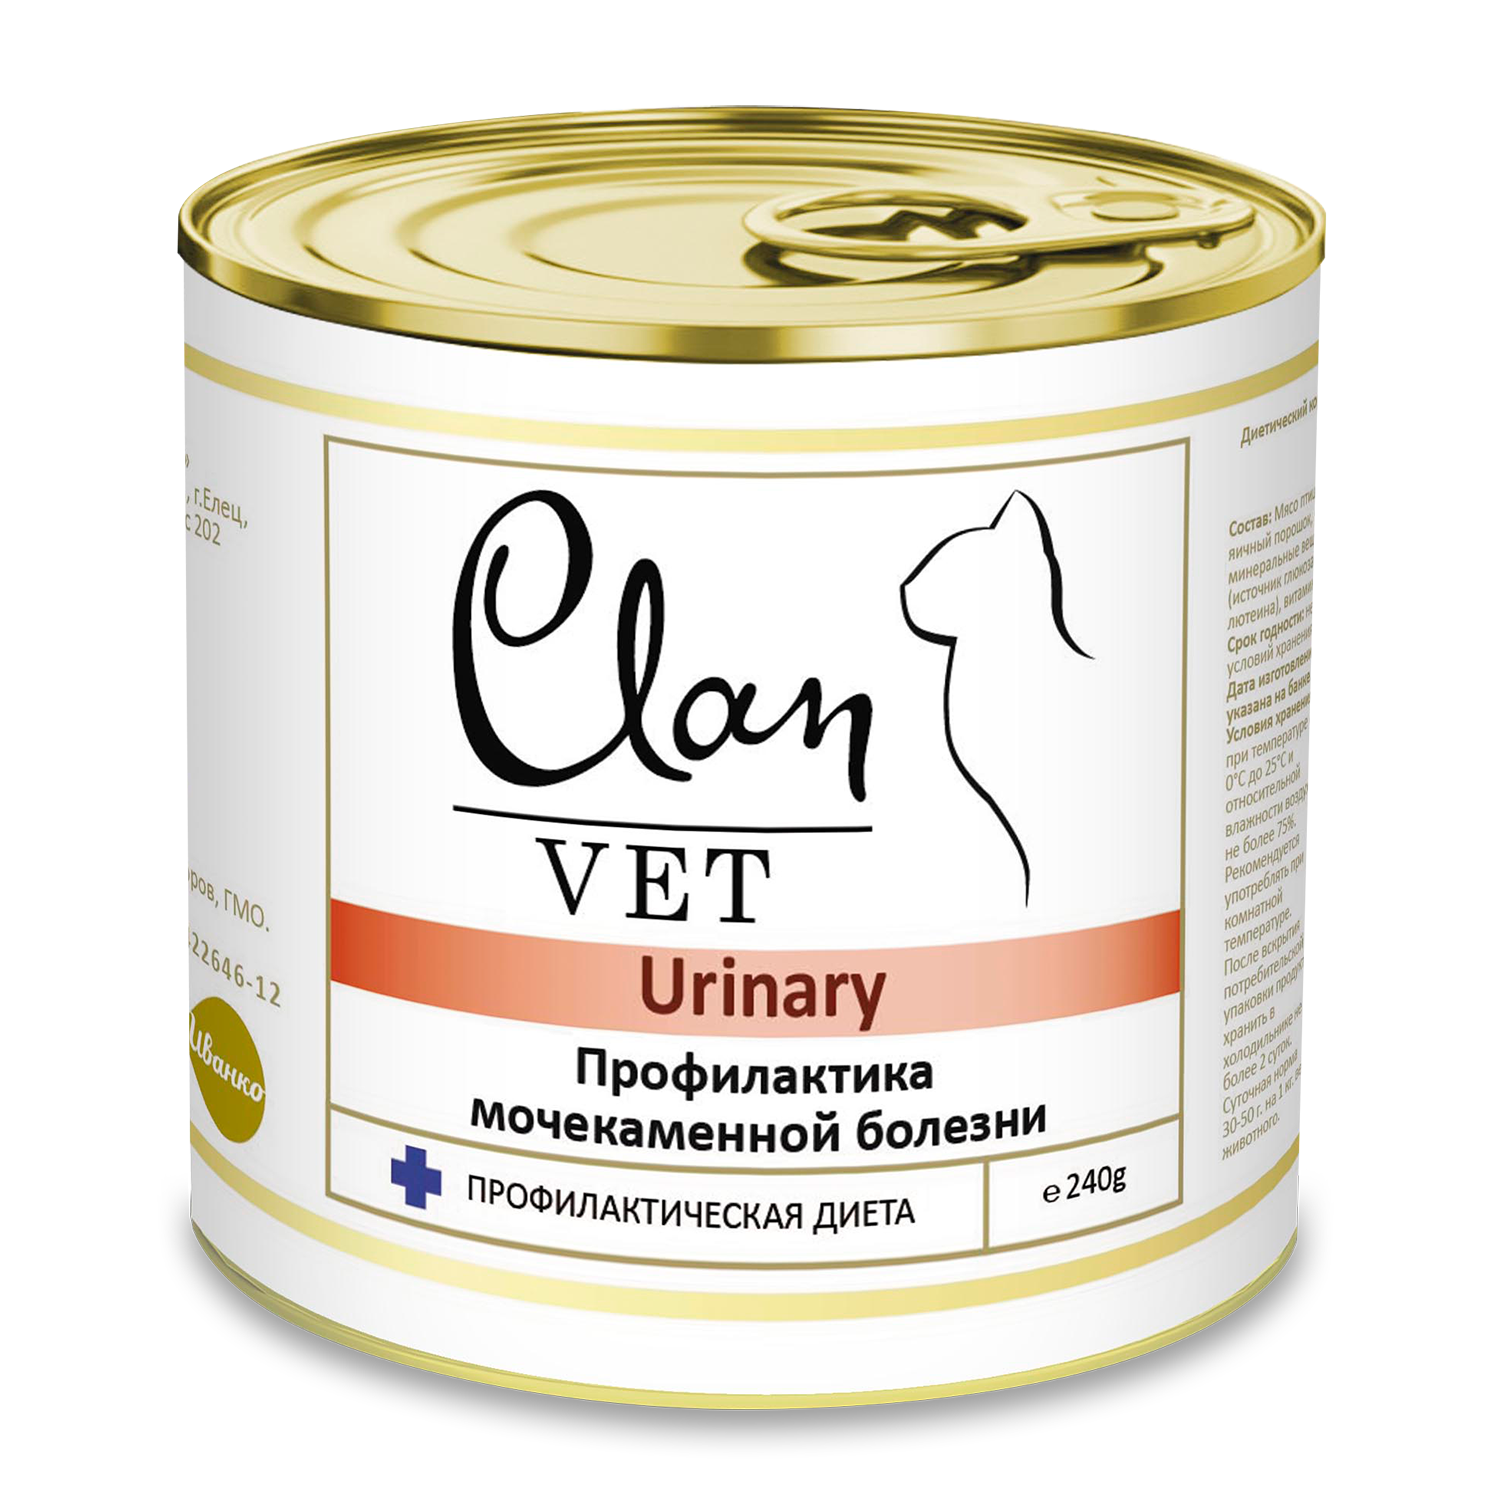 Корм для кошек Clan vet urinary профилактика МКБ диетические консервы 240г - фото 1